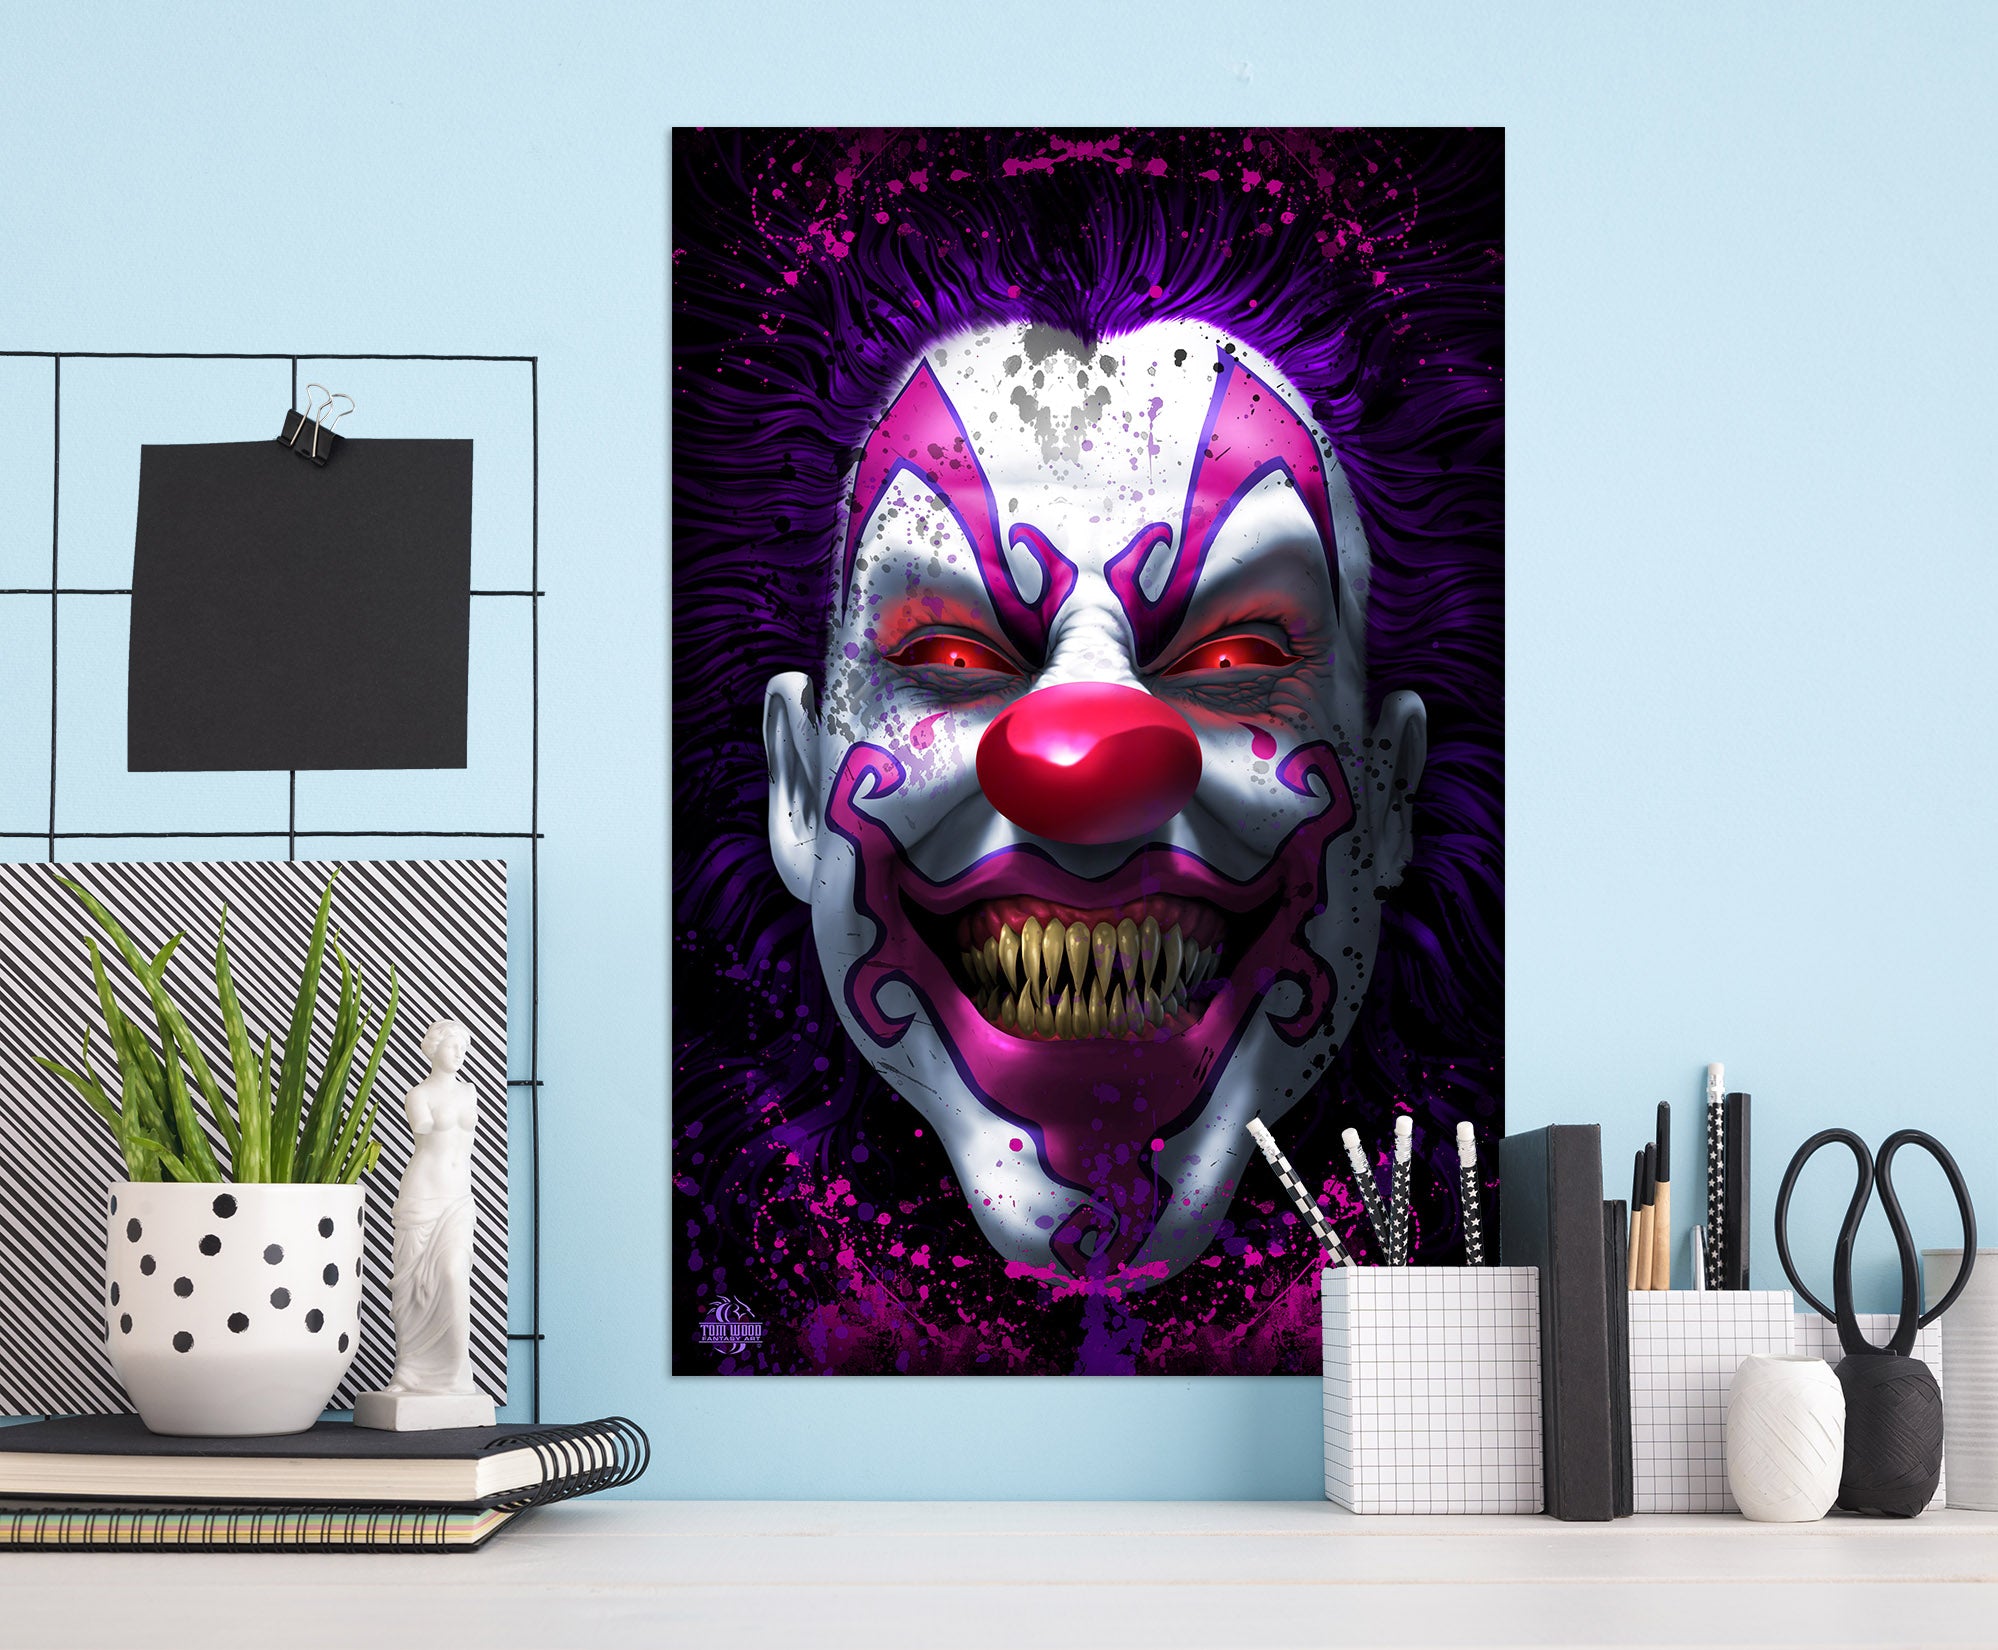 3D Clown 5139 Tom Wood Wall Sticker